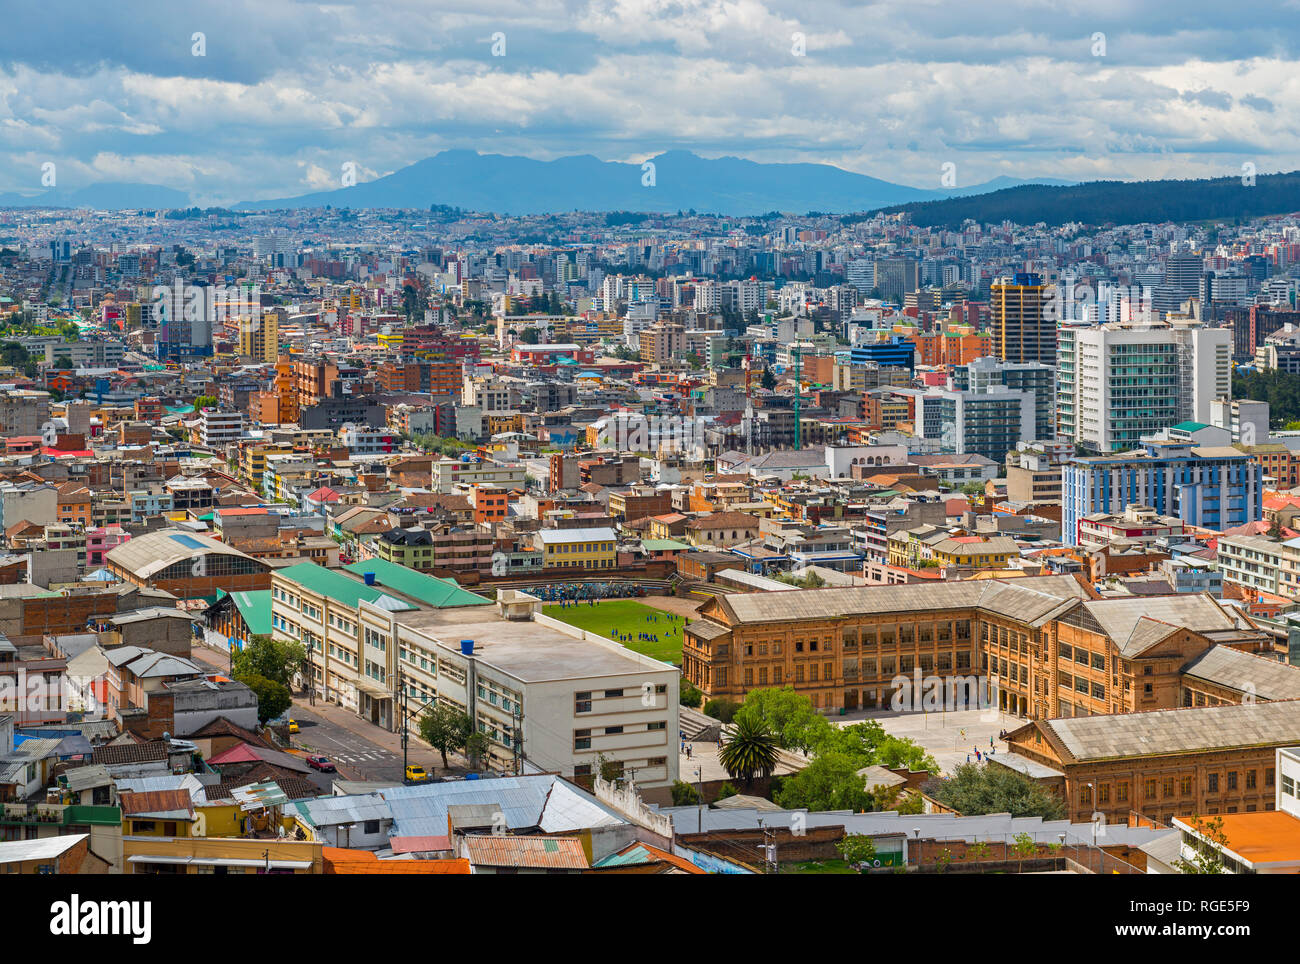 Paesaggio e vista aerea con grattacieli della moderna città di Quito, capitale dell'Ecuador nella Cordigliera delle Ande, Sud America. Foto Stock